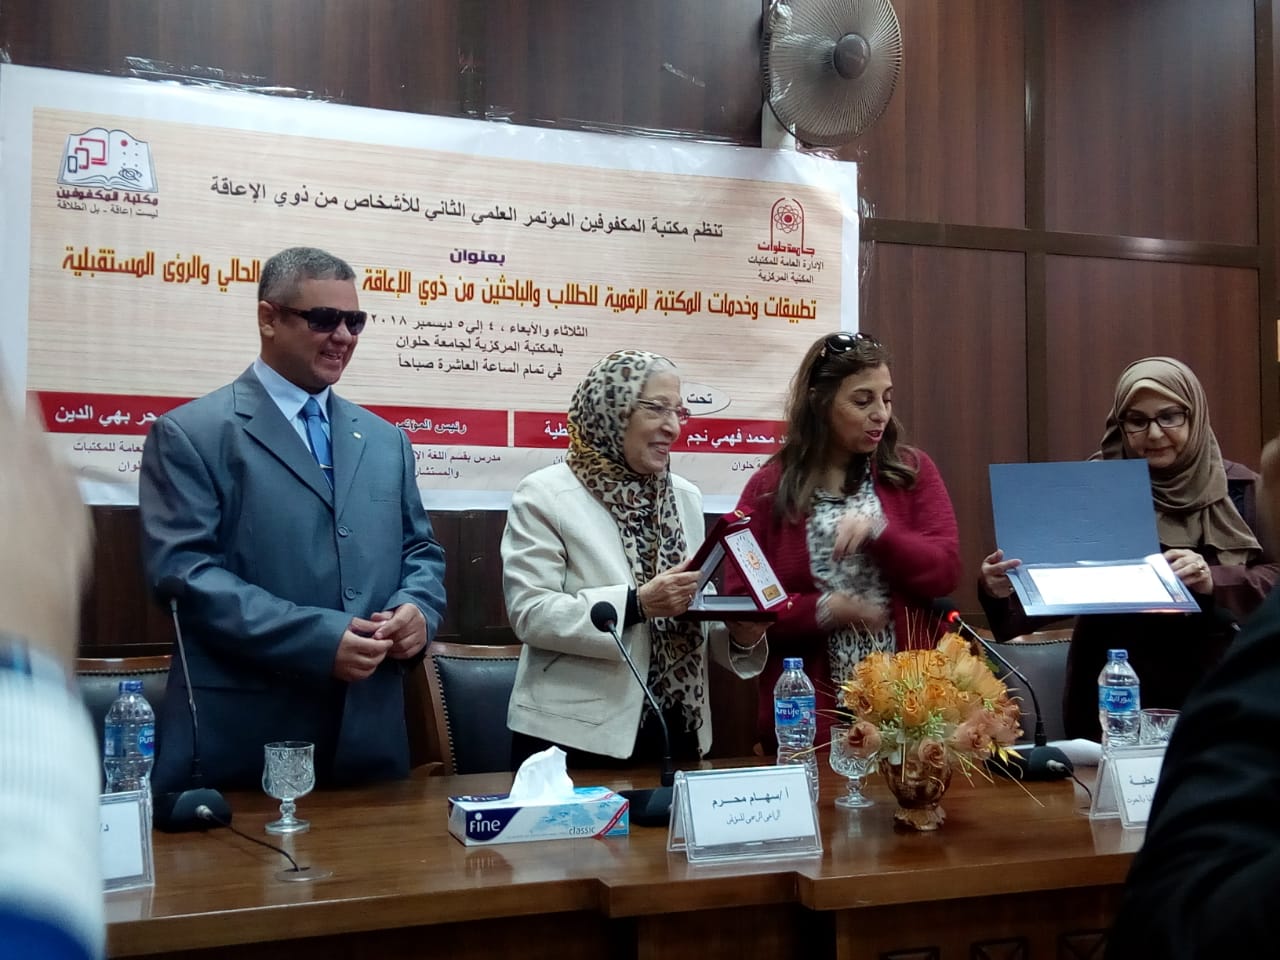 انطلاق اليوم الأول من فاعليات المؤتمر العلمى الثانى لذوى الاحتياجات الخاصة بجامعة حلوان (1)